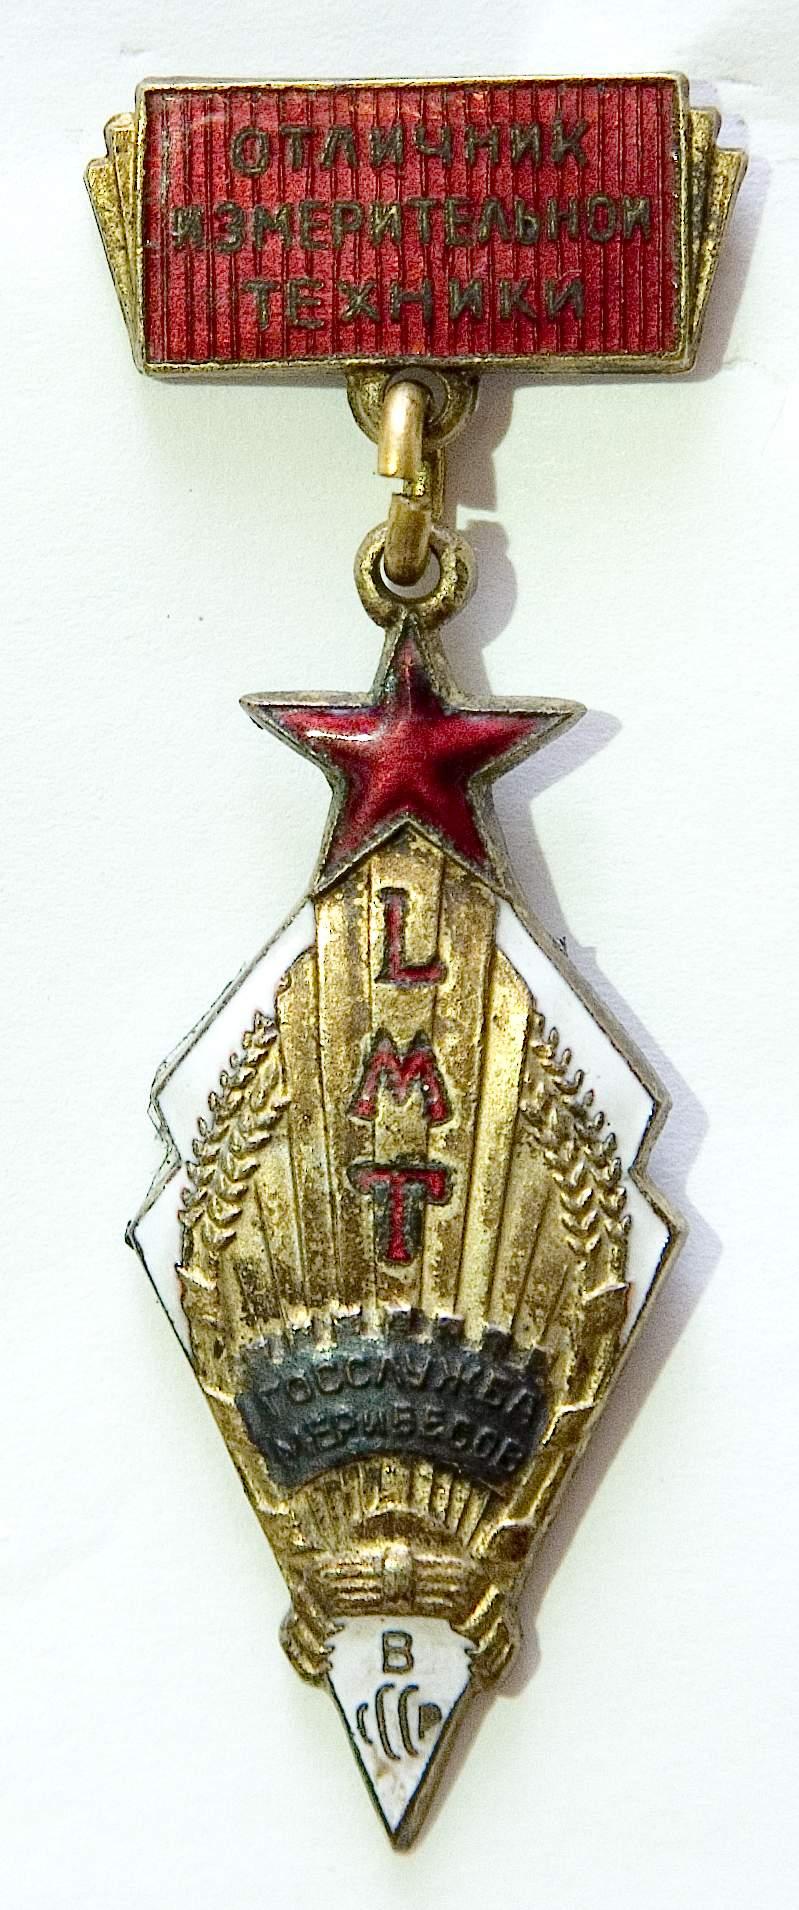 Значок «Отличник измерительной техники», учрежденный к 100-летию Государственной службы мер и весов в СССР